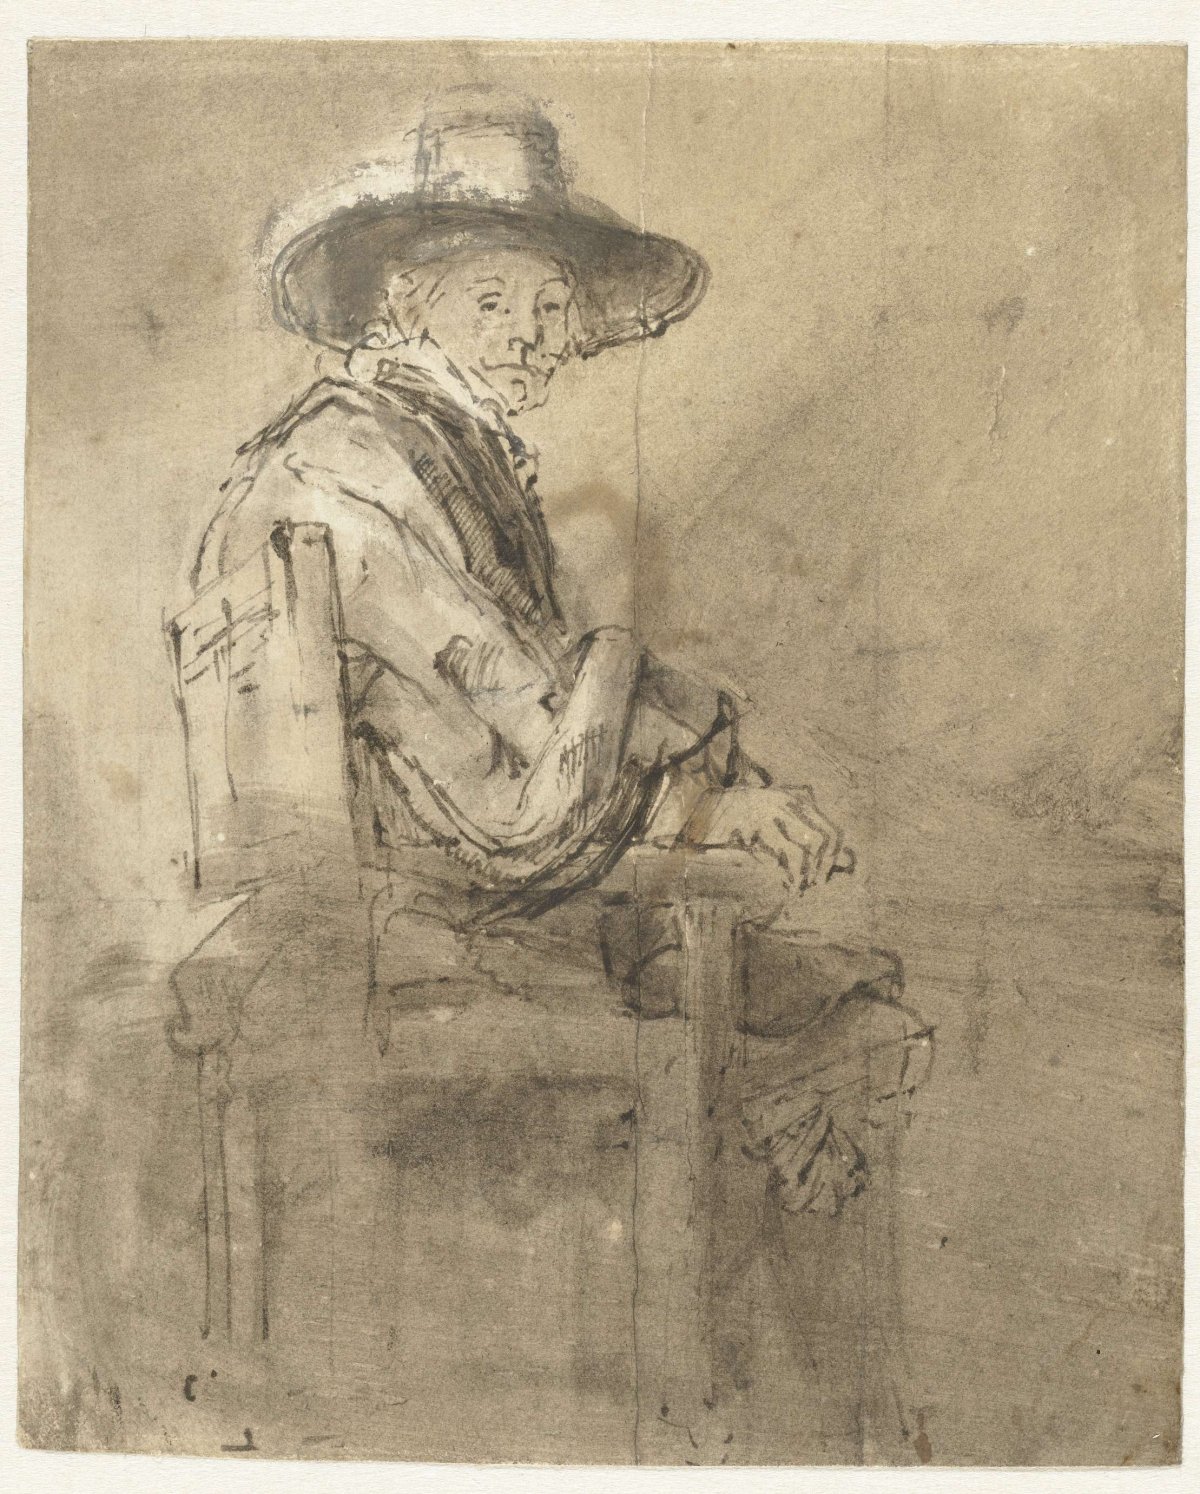 Seated Syndic: Jacob van Loon, Rembrandt van Rijn, c. 1661 - c. 1662